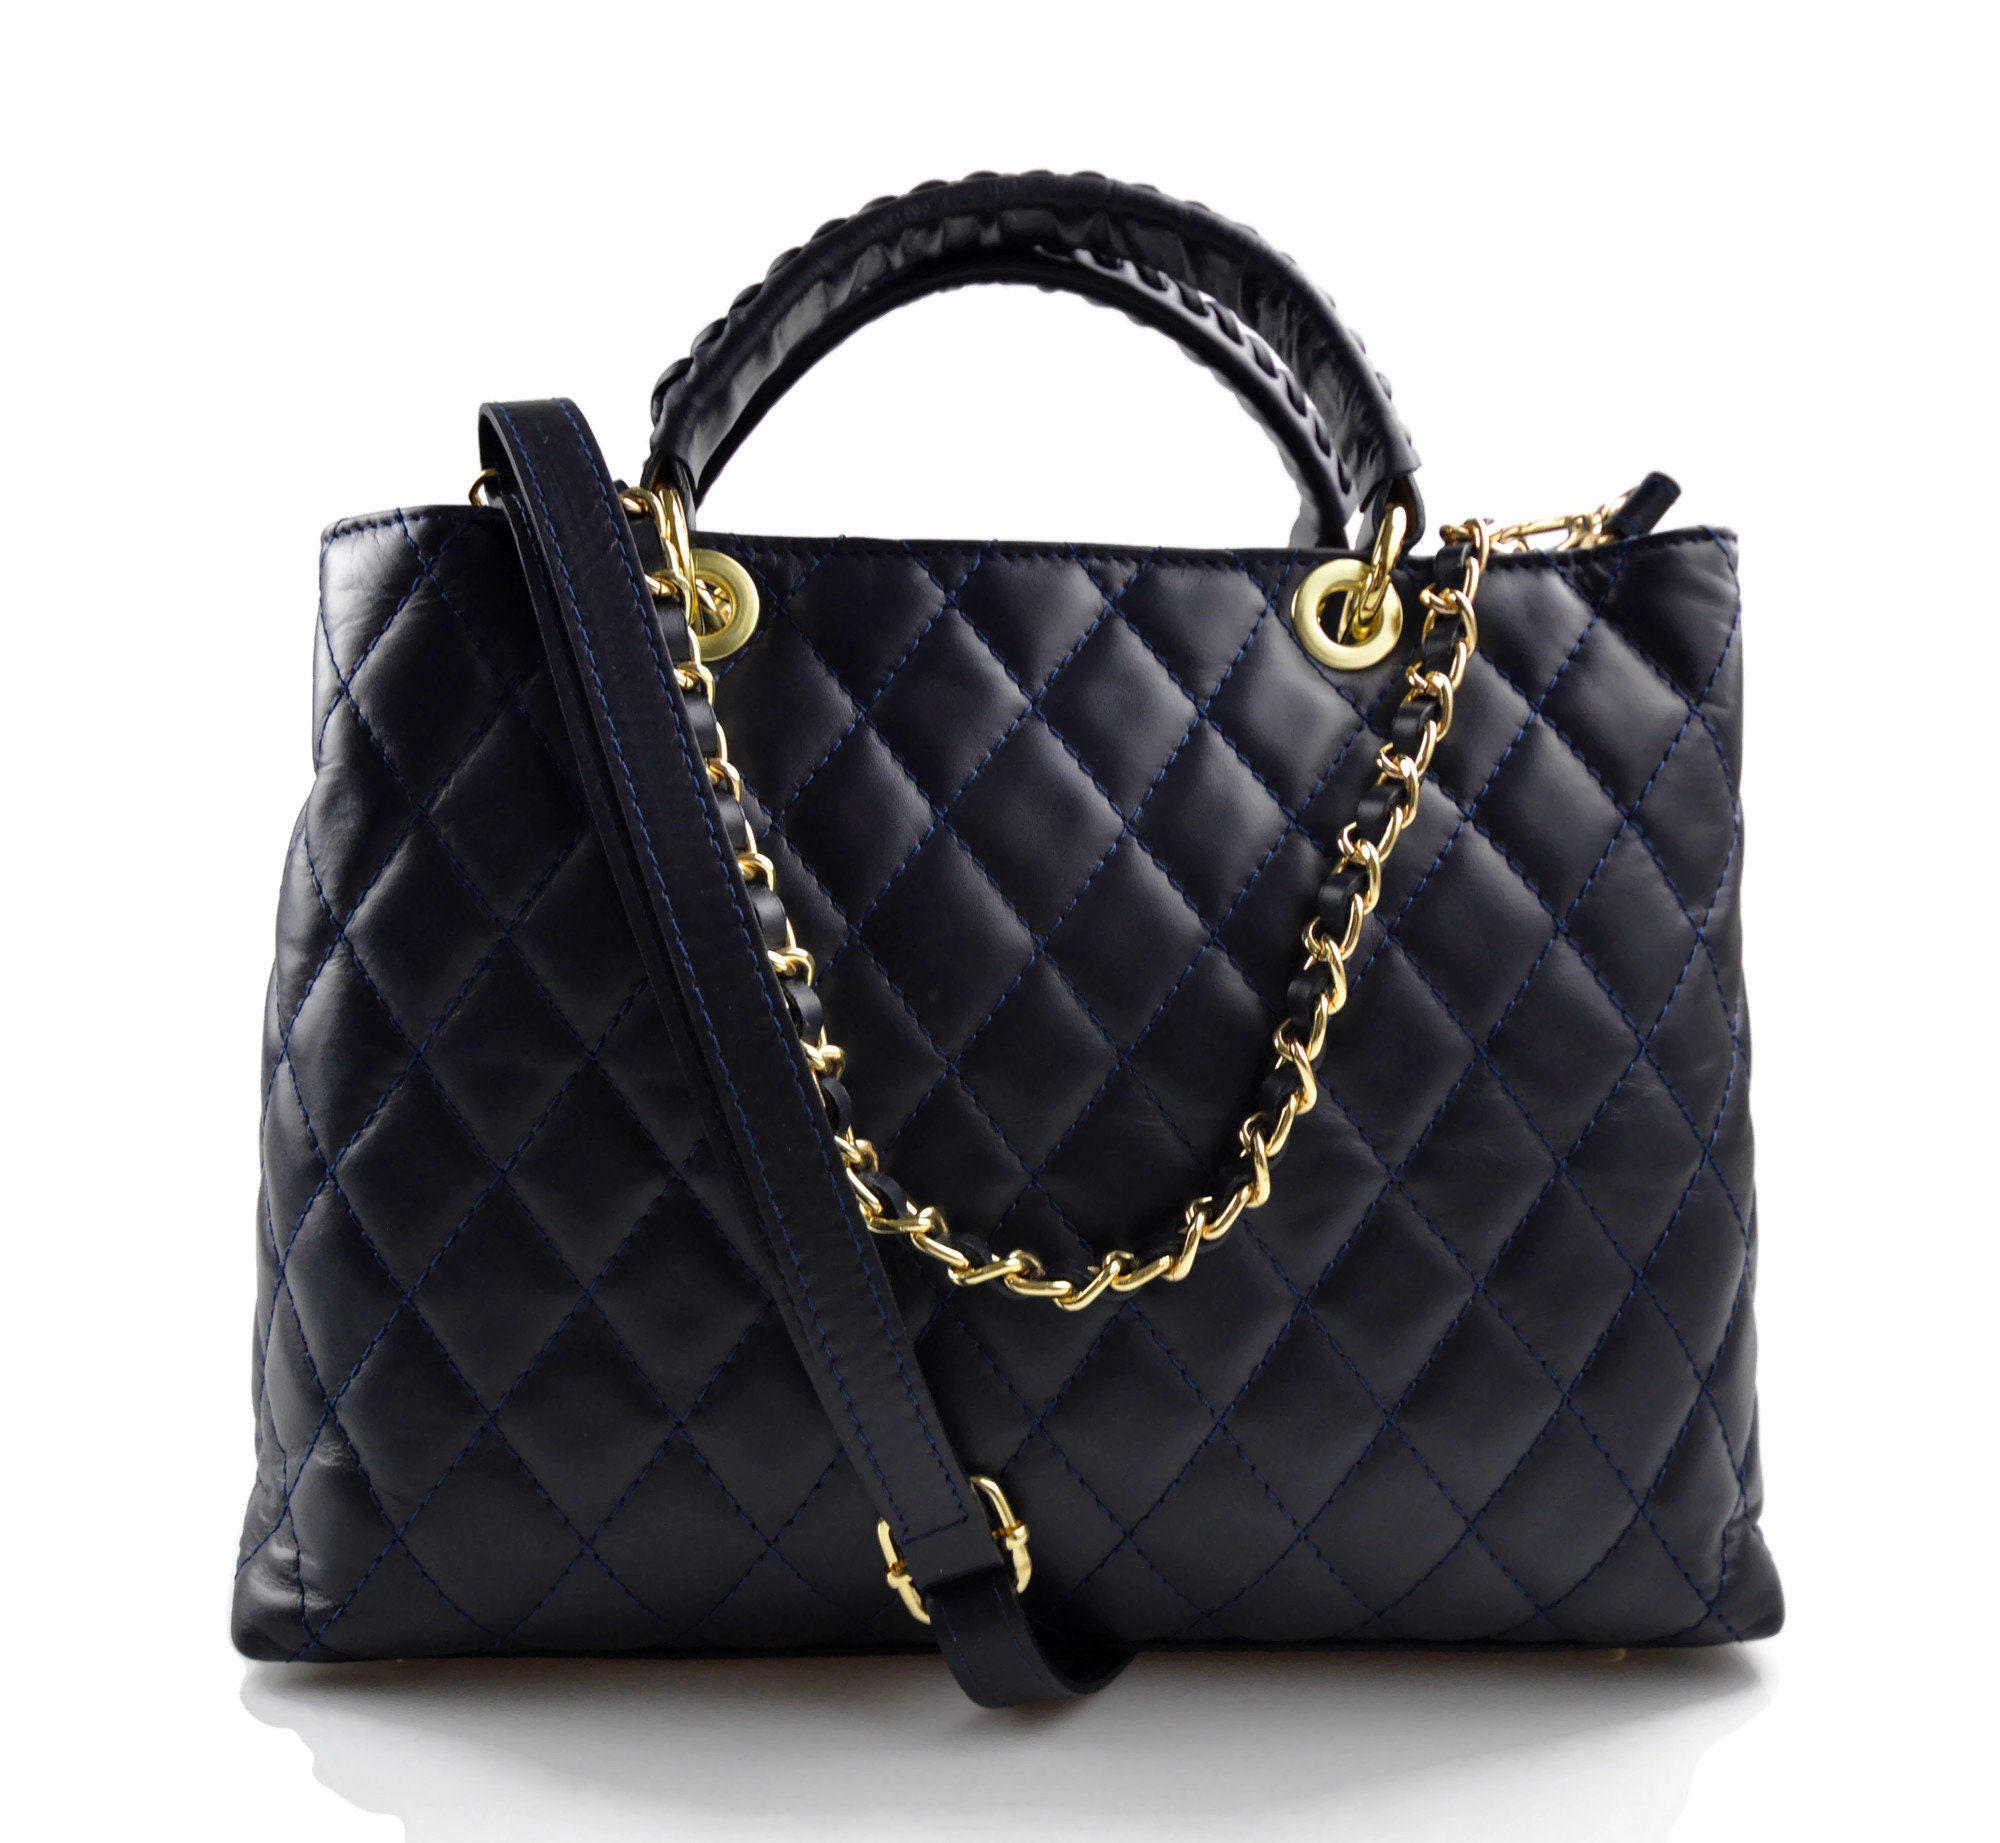 Leather women purse leather handbag leather shoulder bag | Etsy